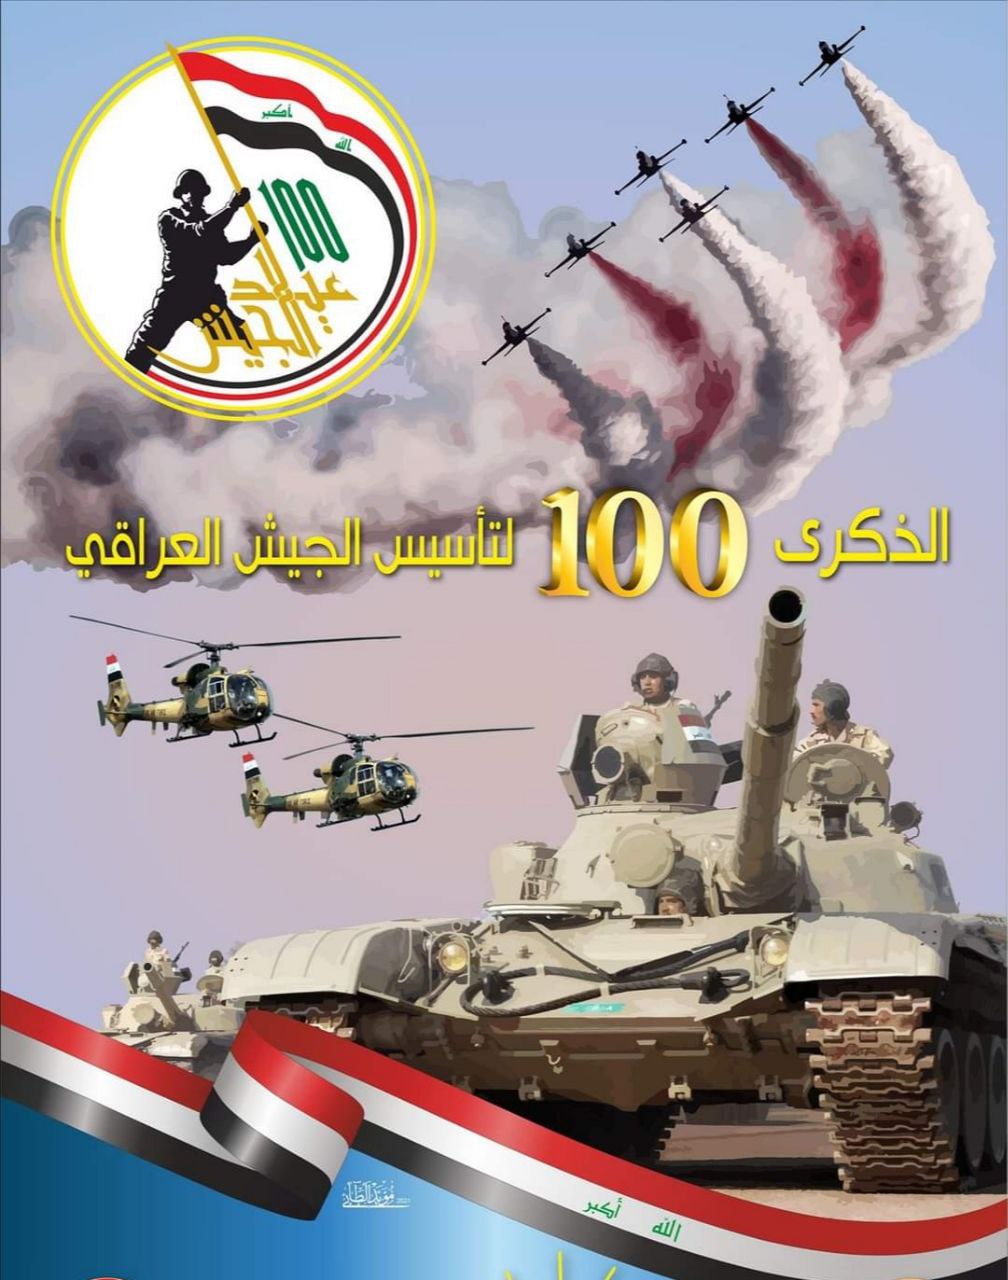 تهنئة رئيس جامعة ميسان بمناسبة عيد الجيش العراقي الباسل